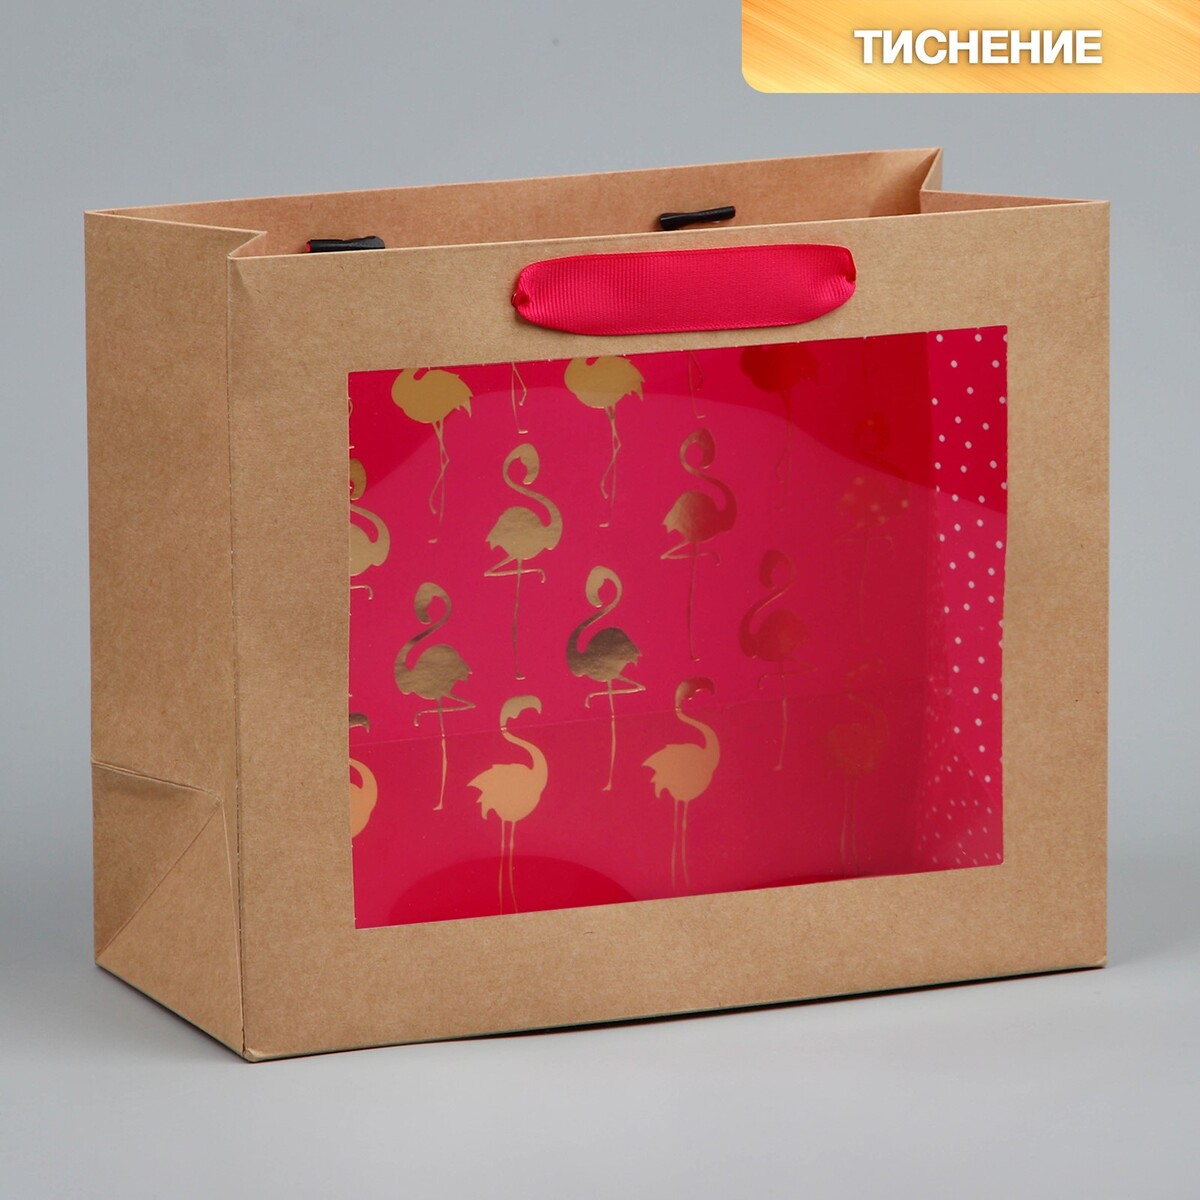 Пакет подарочный крафтовый с пластиковым окном, упаковка, пакет подарочный с пластиковым окном 31 х 26 х 11 см холодное сердце